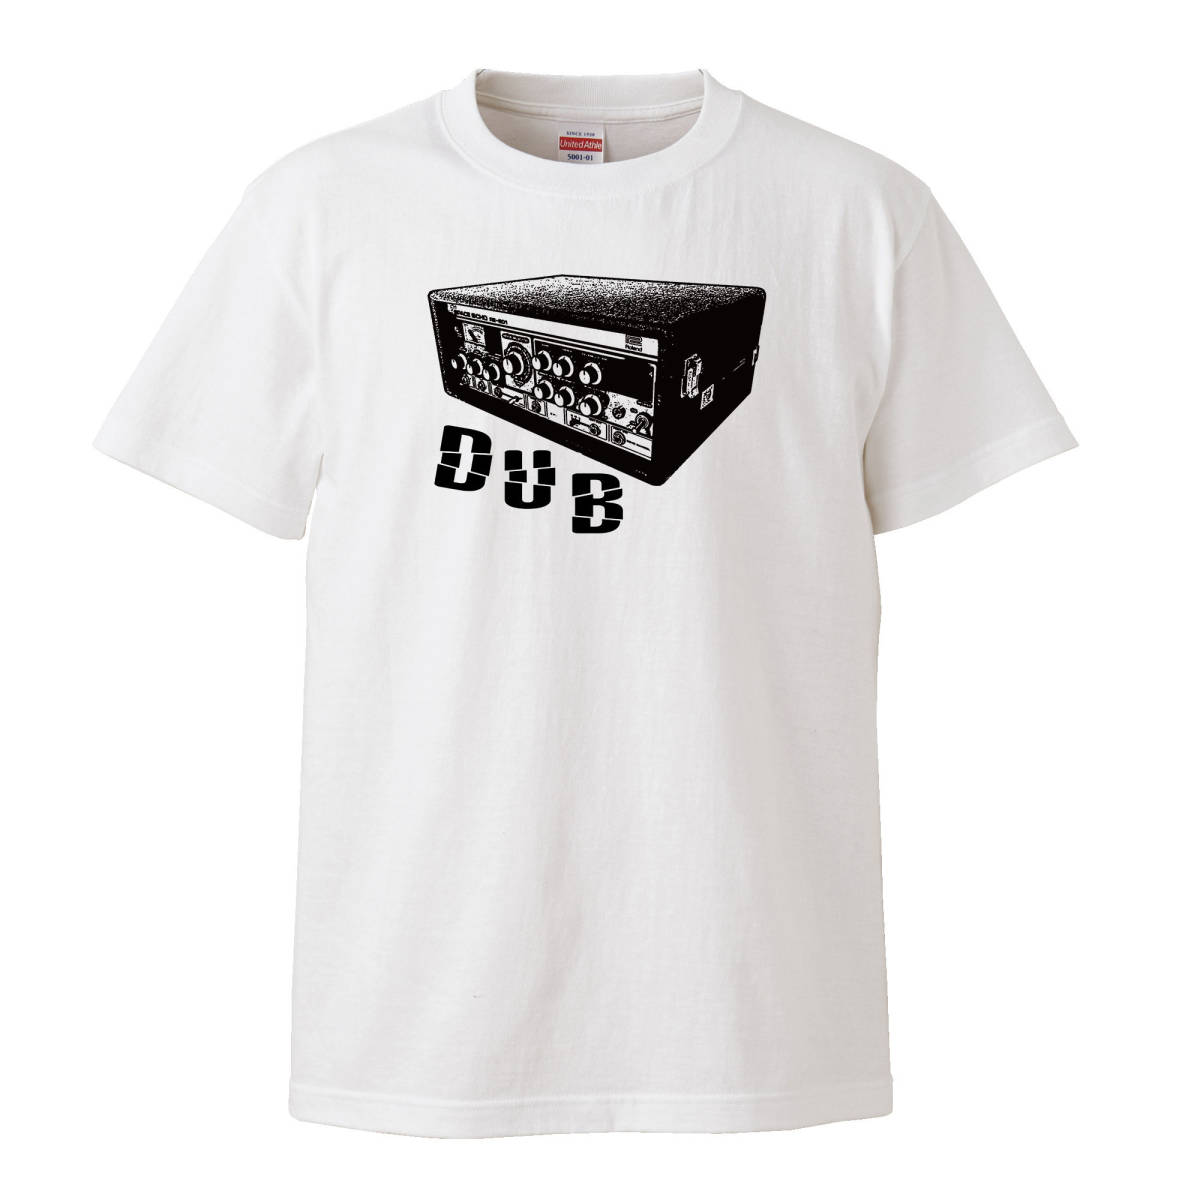 【Lサイズ 白Tシャツ】DUB ダブ テープエコー RE201 roland ローランド リーペリー lee perry ジャマイカ レゲエ バンドT LP CD レコードの画像1